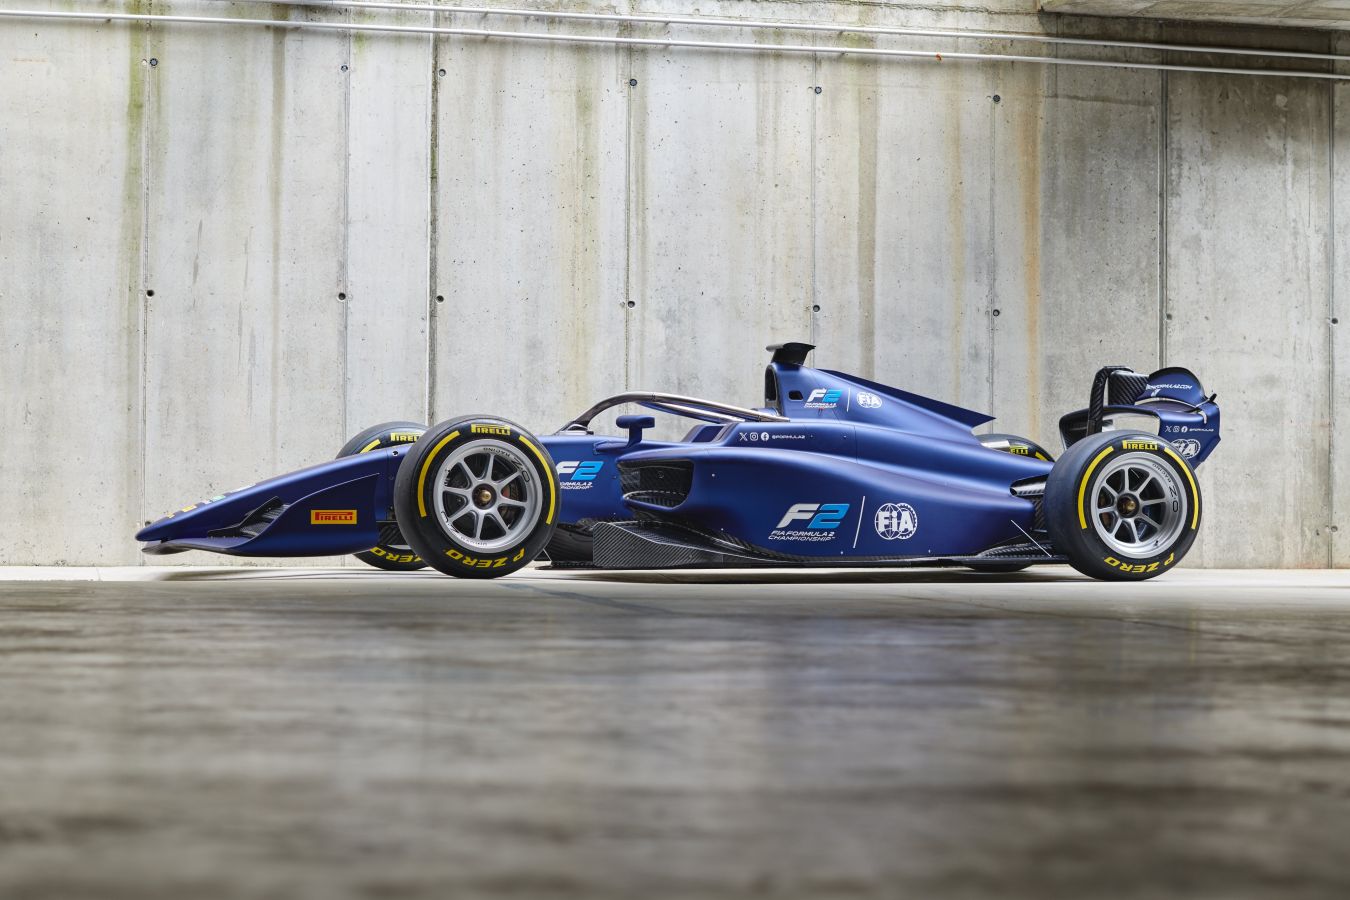 Формула 1 внедряет водородные технологии в автоспорт.